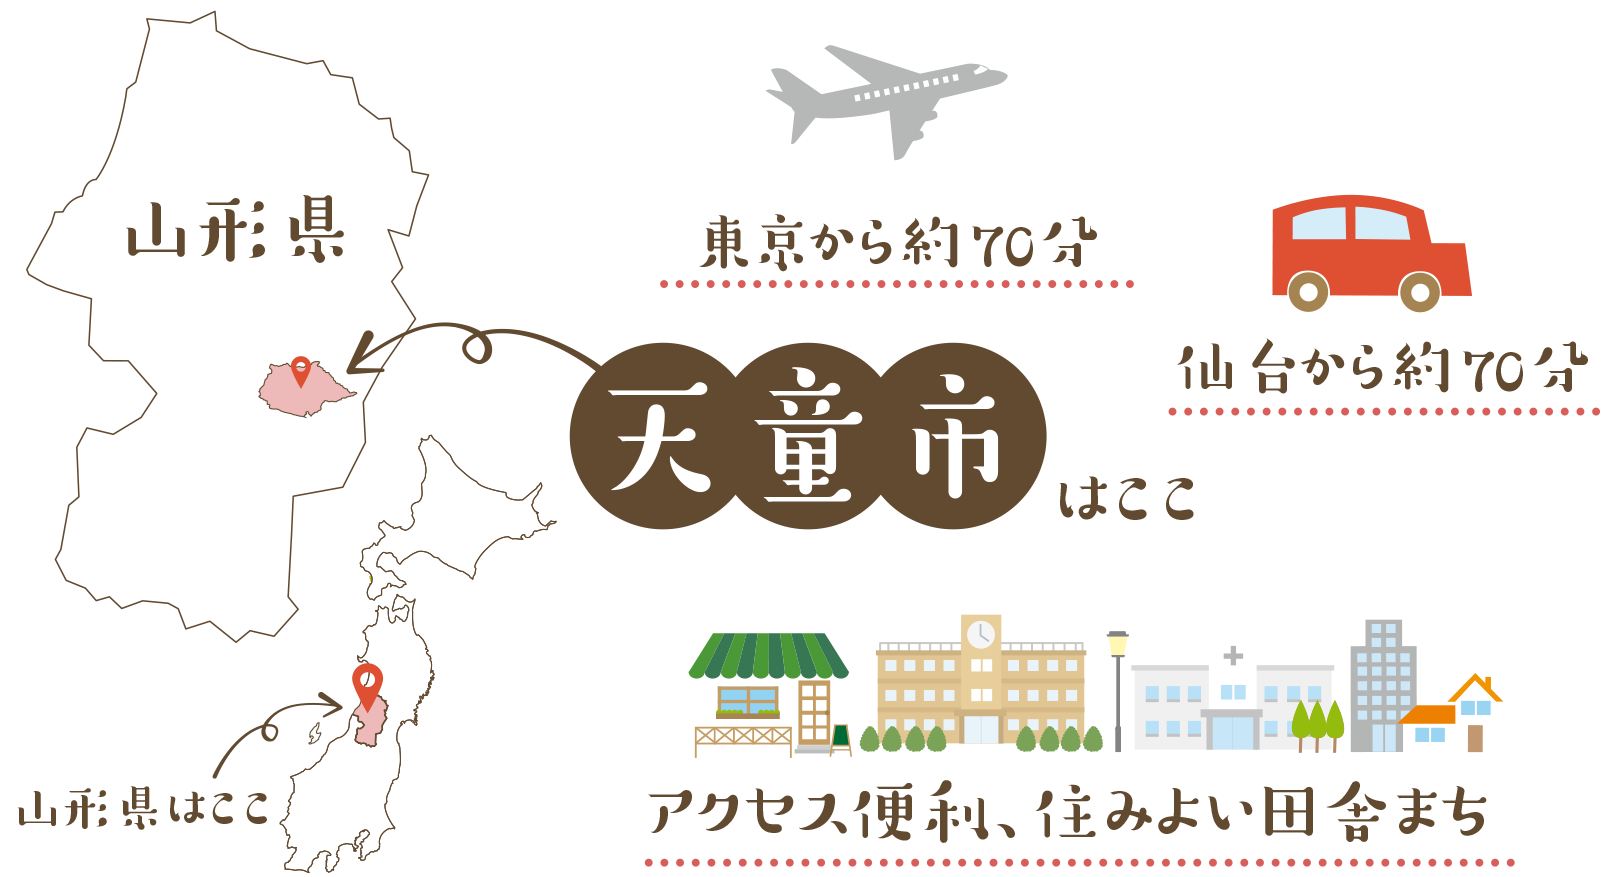 東京から飛行機で約70分 仙台から車で約70分 アクセス便利、住みよい田舎まち 天童市